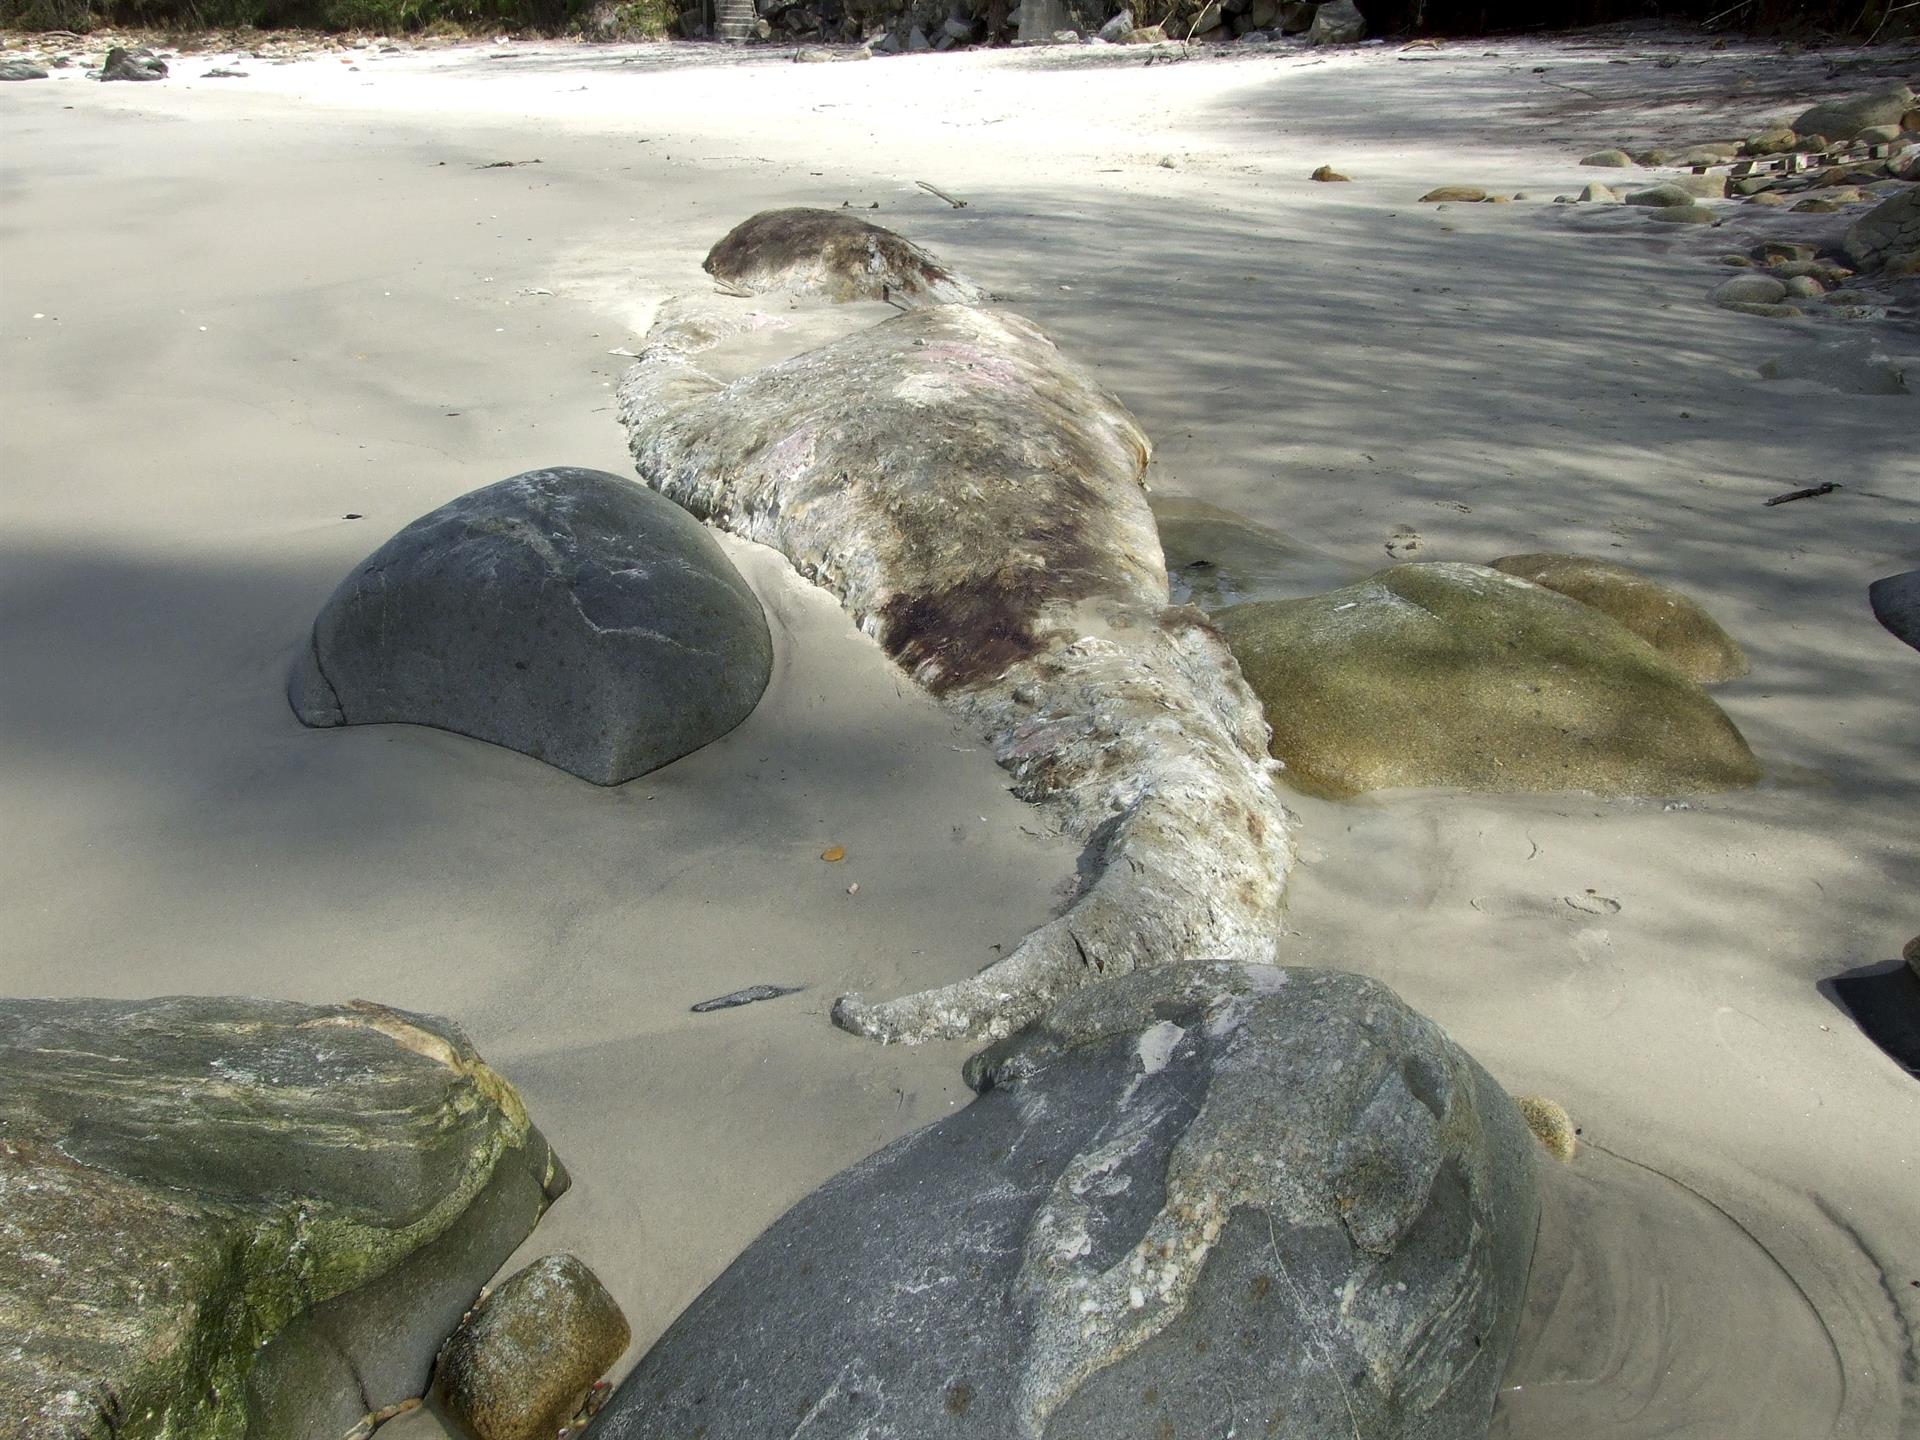 Vista de un cachalote varado en una playa, imagen de archivo. EFE/Julio Santos
